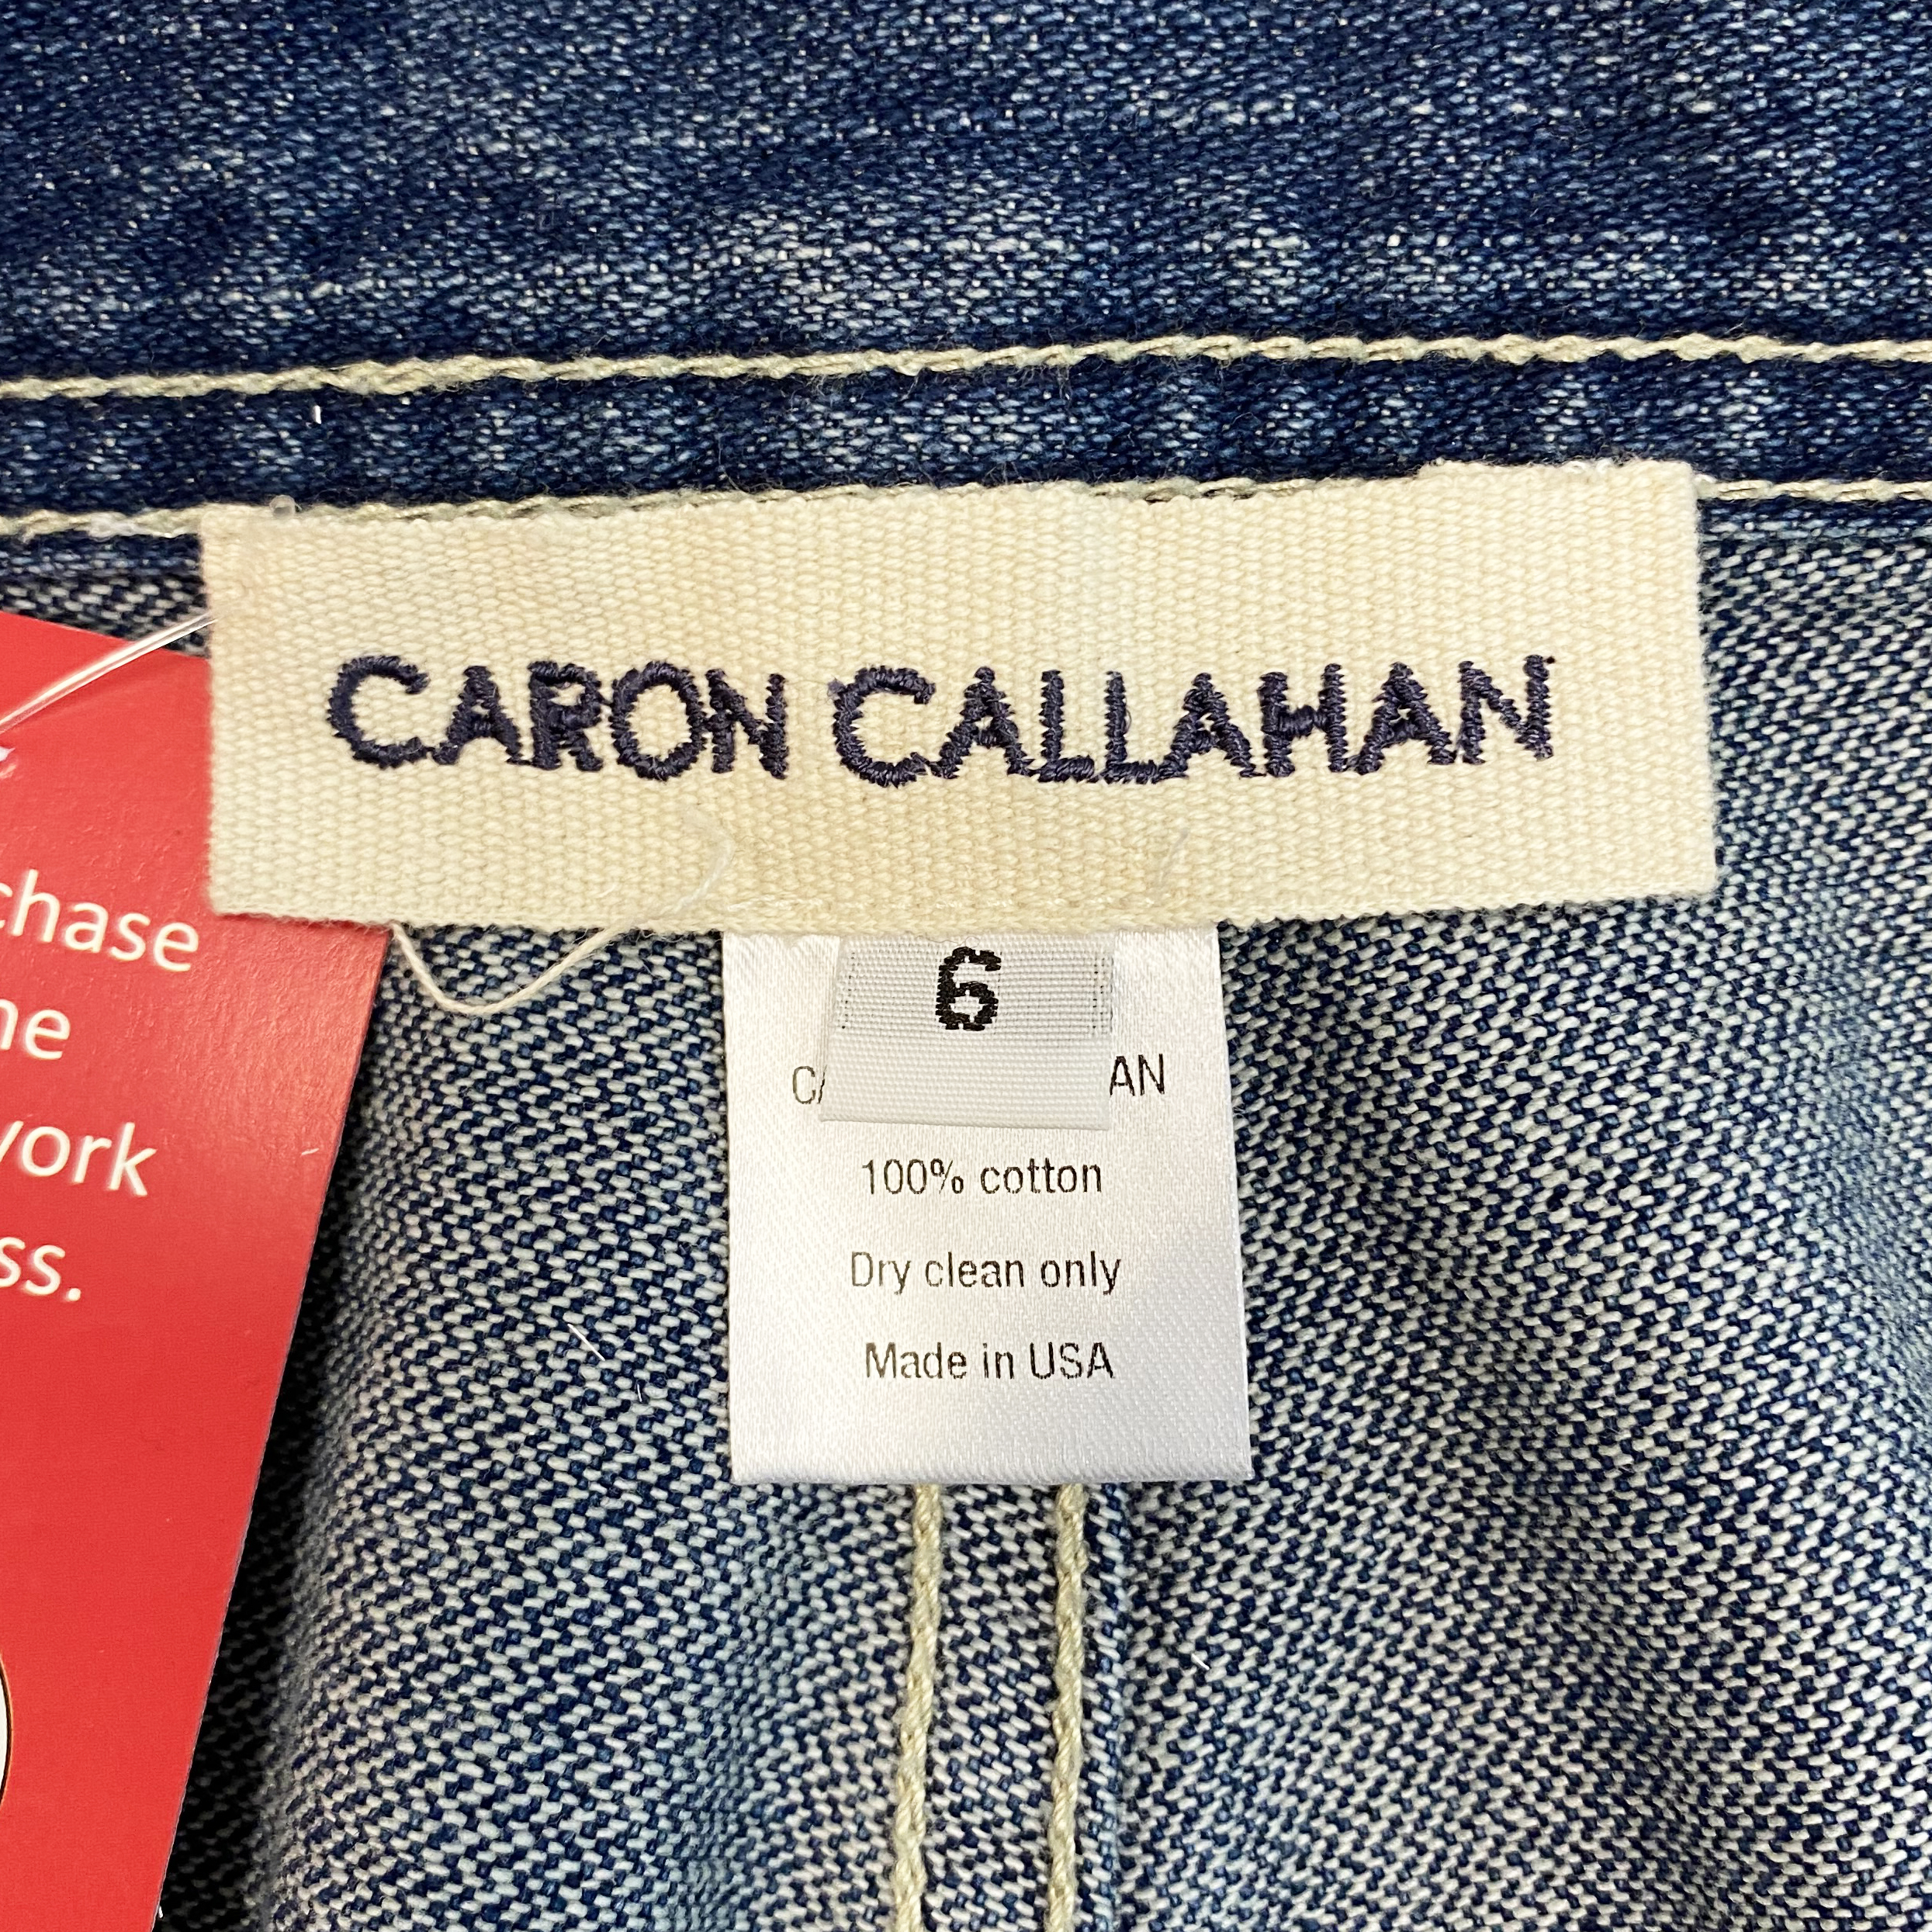 Caron Callahan Jeans